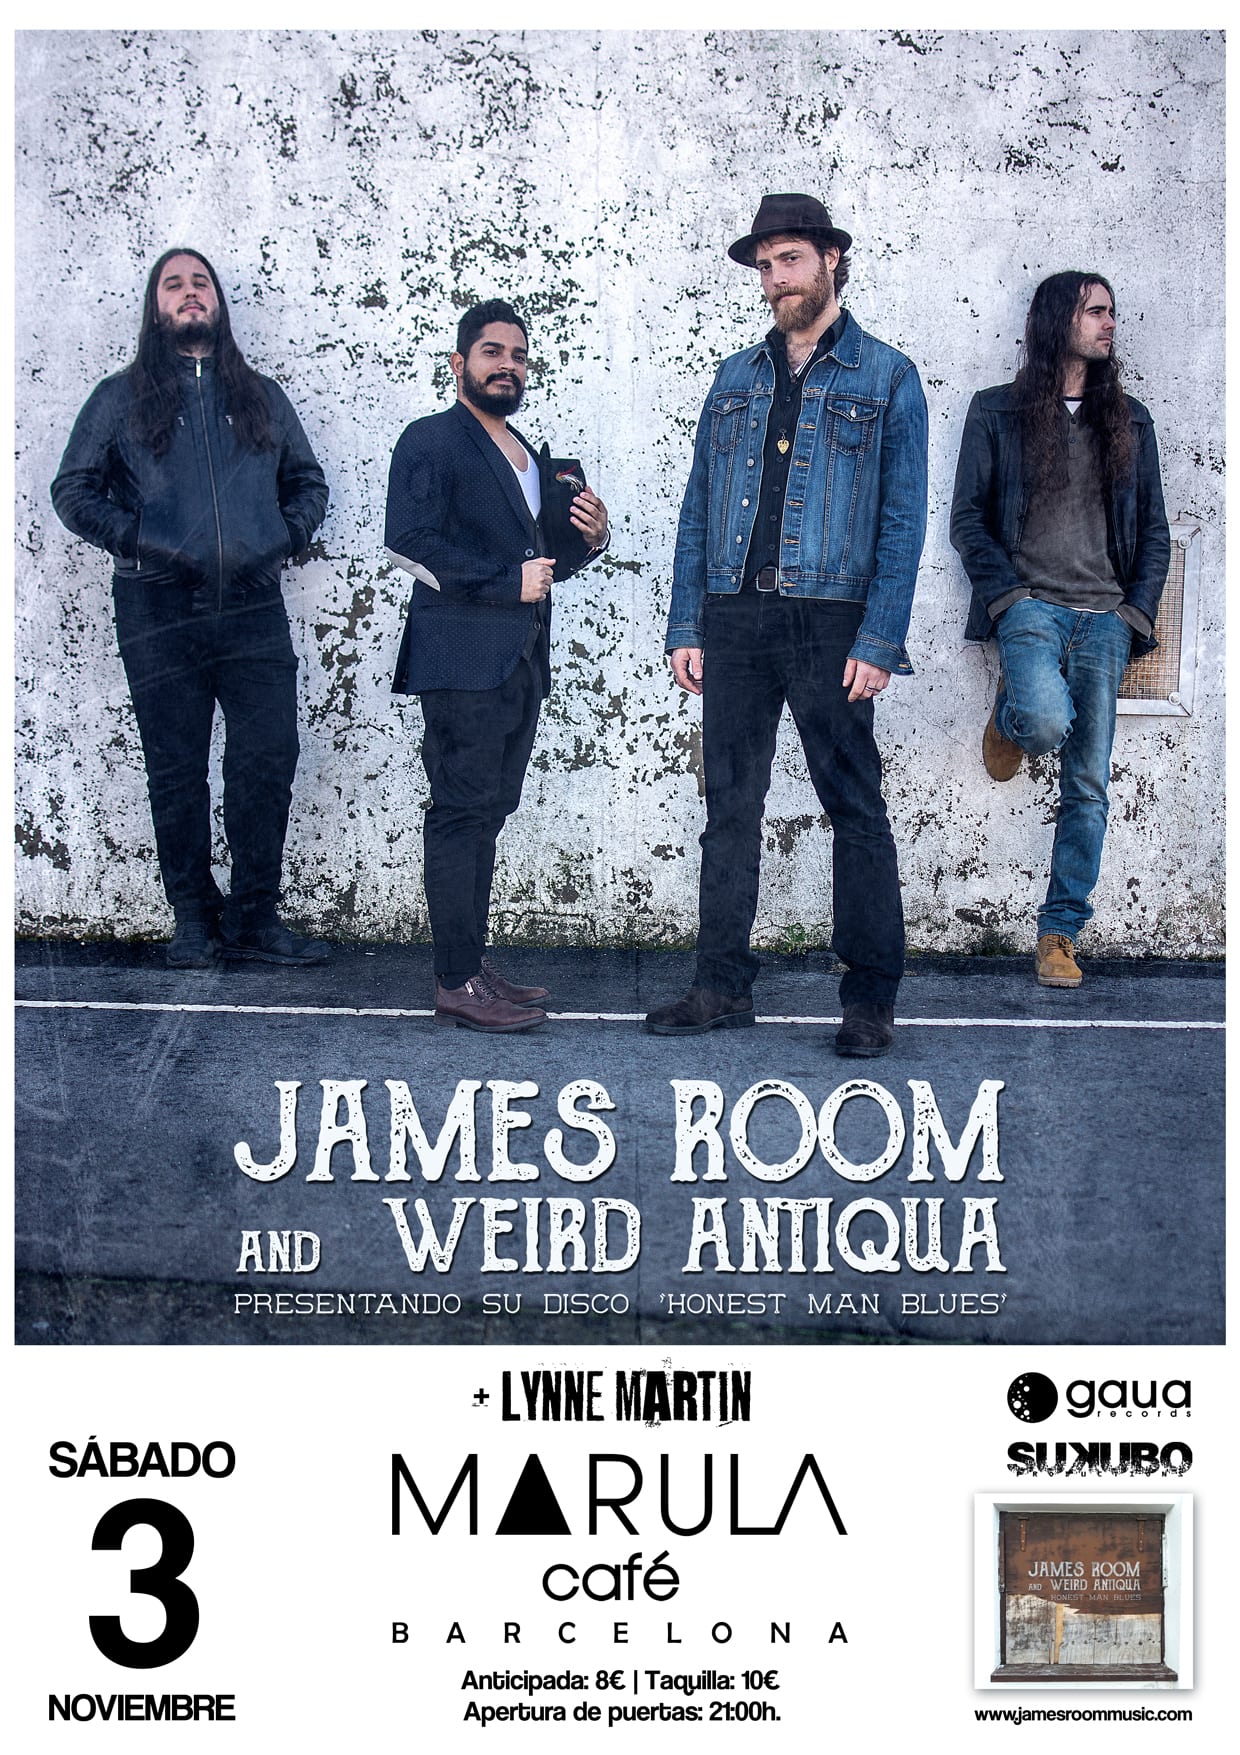 James Room & Weird Antiqua en Barcelona el próximo día 3